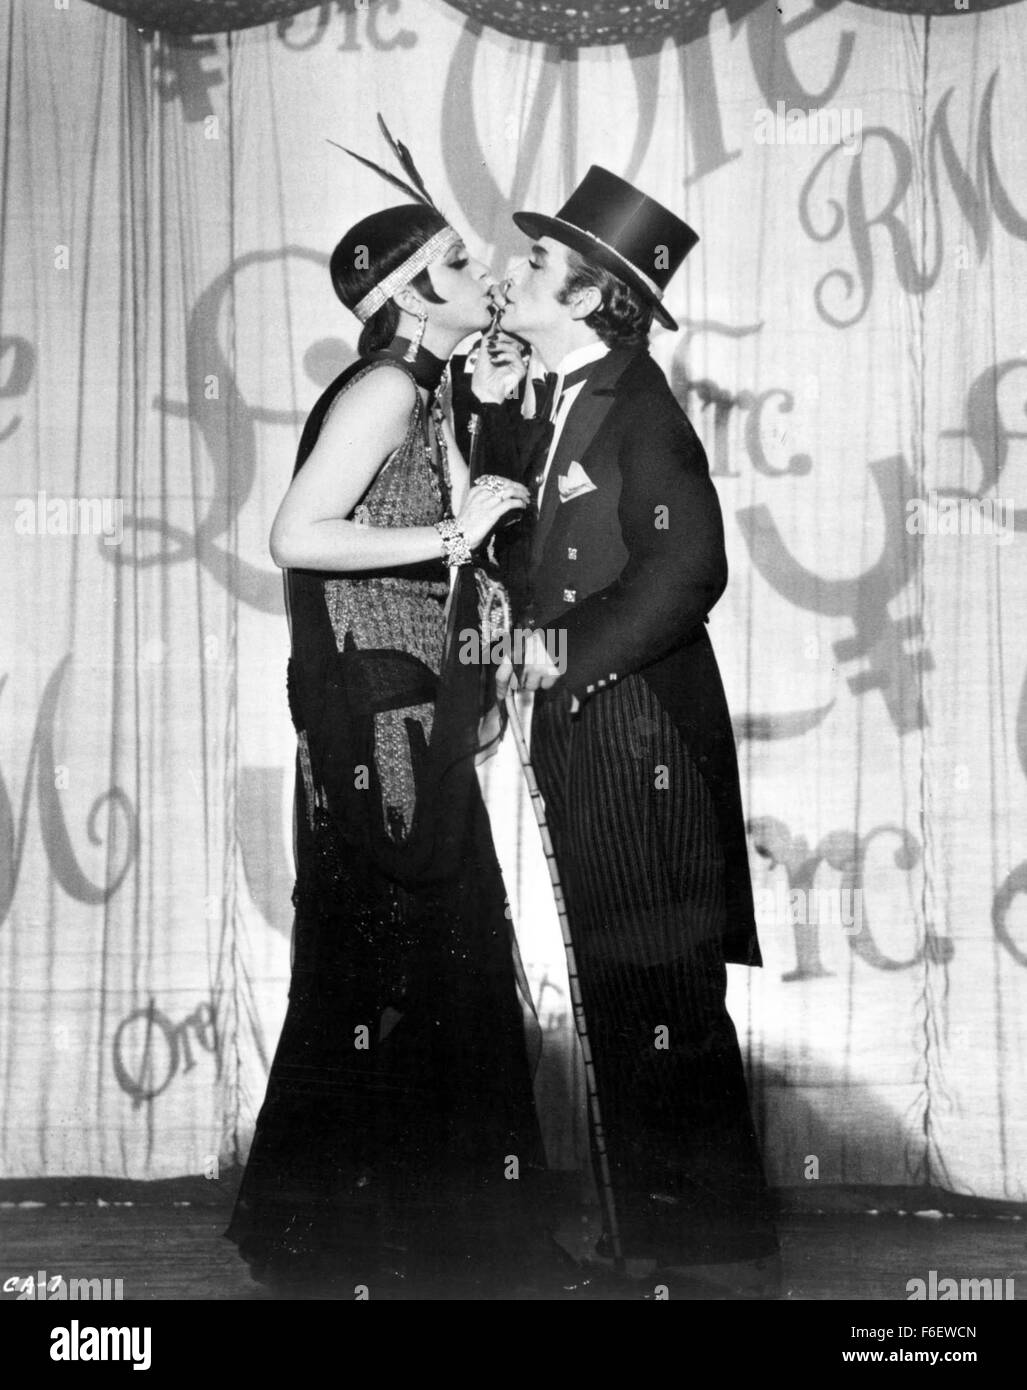 Jan 05, 1972; Hollywood, CA, EE.UU.; Liza Minnelli y Joel grey en una escena del drama musical "Cabaret" dirigido por Bob Fosse. Foto de stock